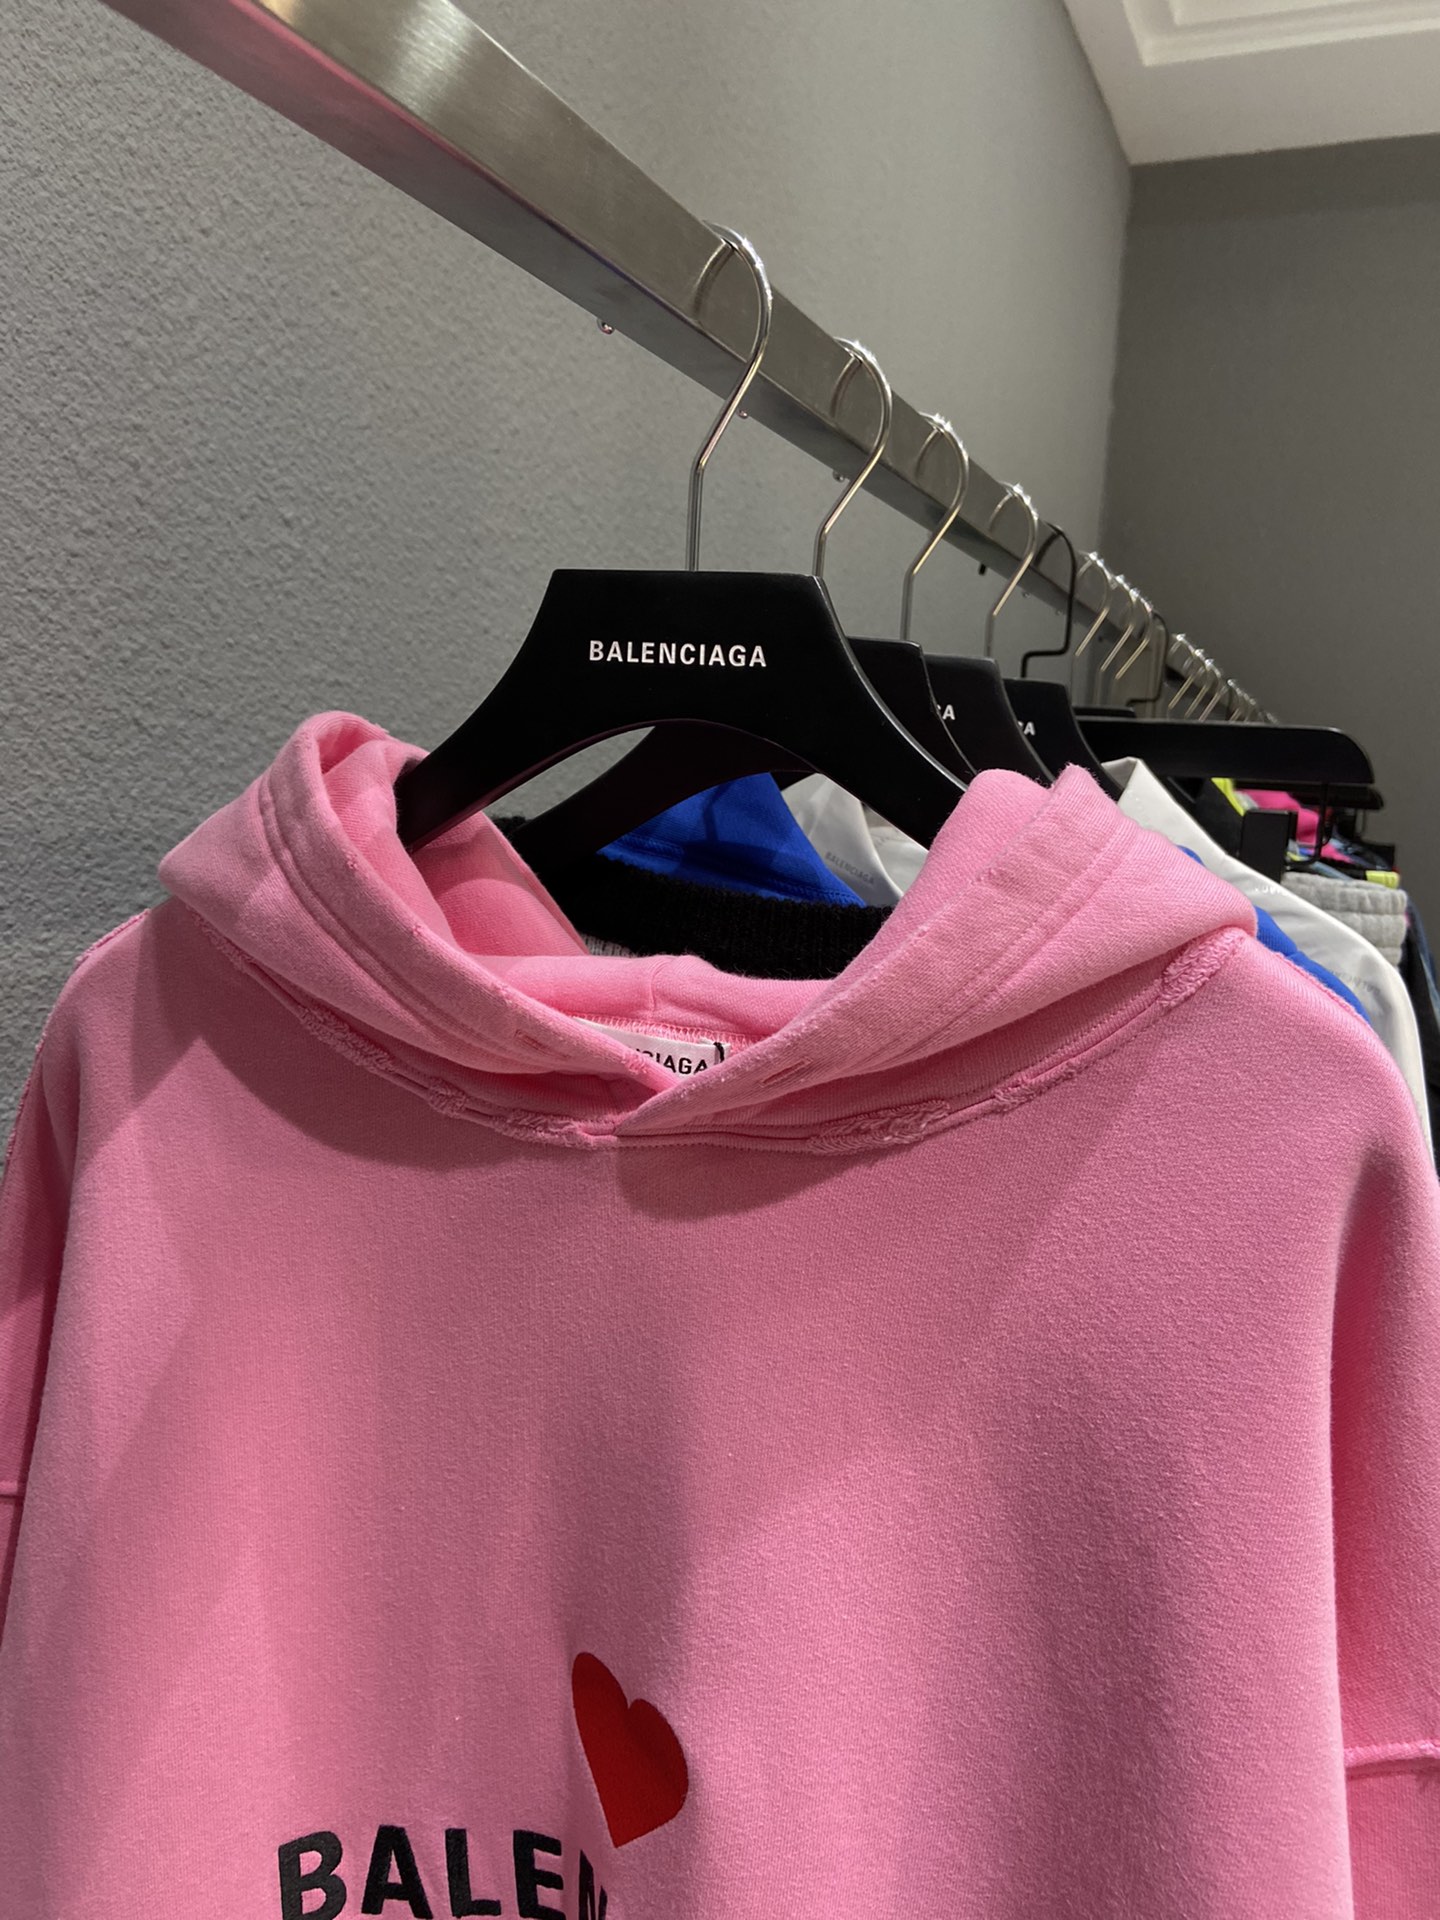 Top với hơn 70 về áo hoodie balenciaga chữ hồng mới nhất  cdgdbentreeduvn